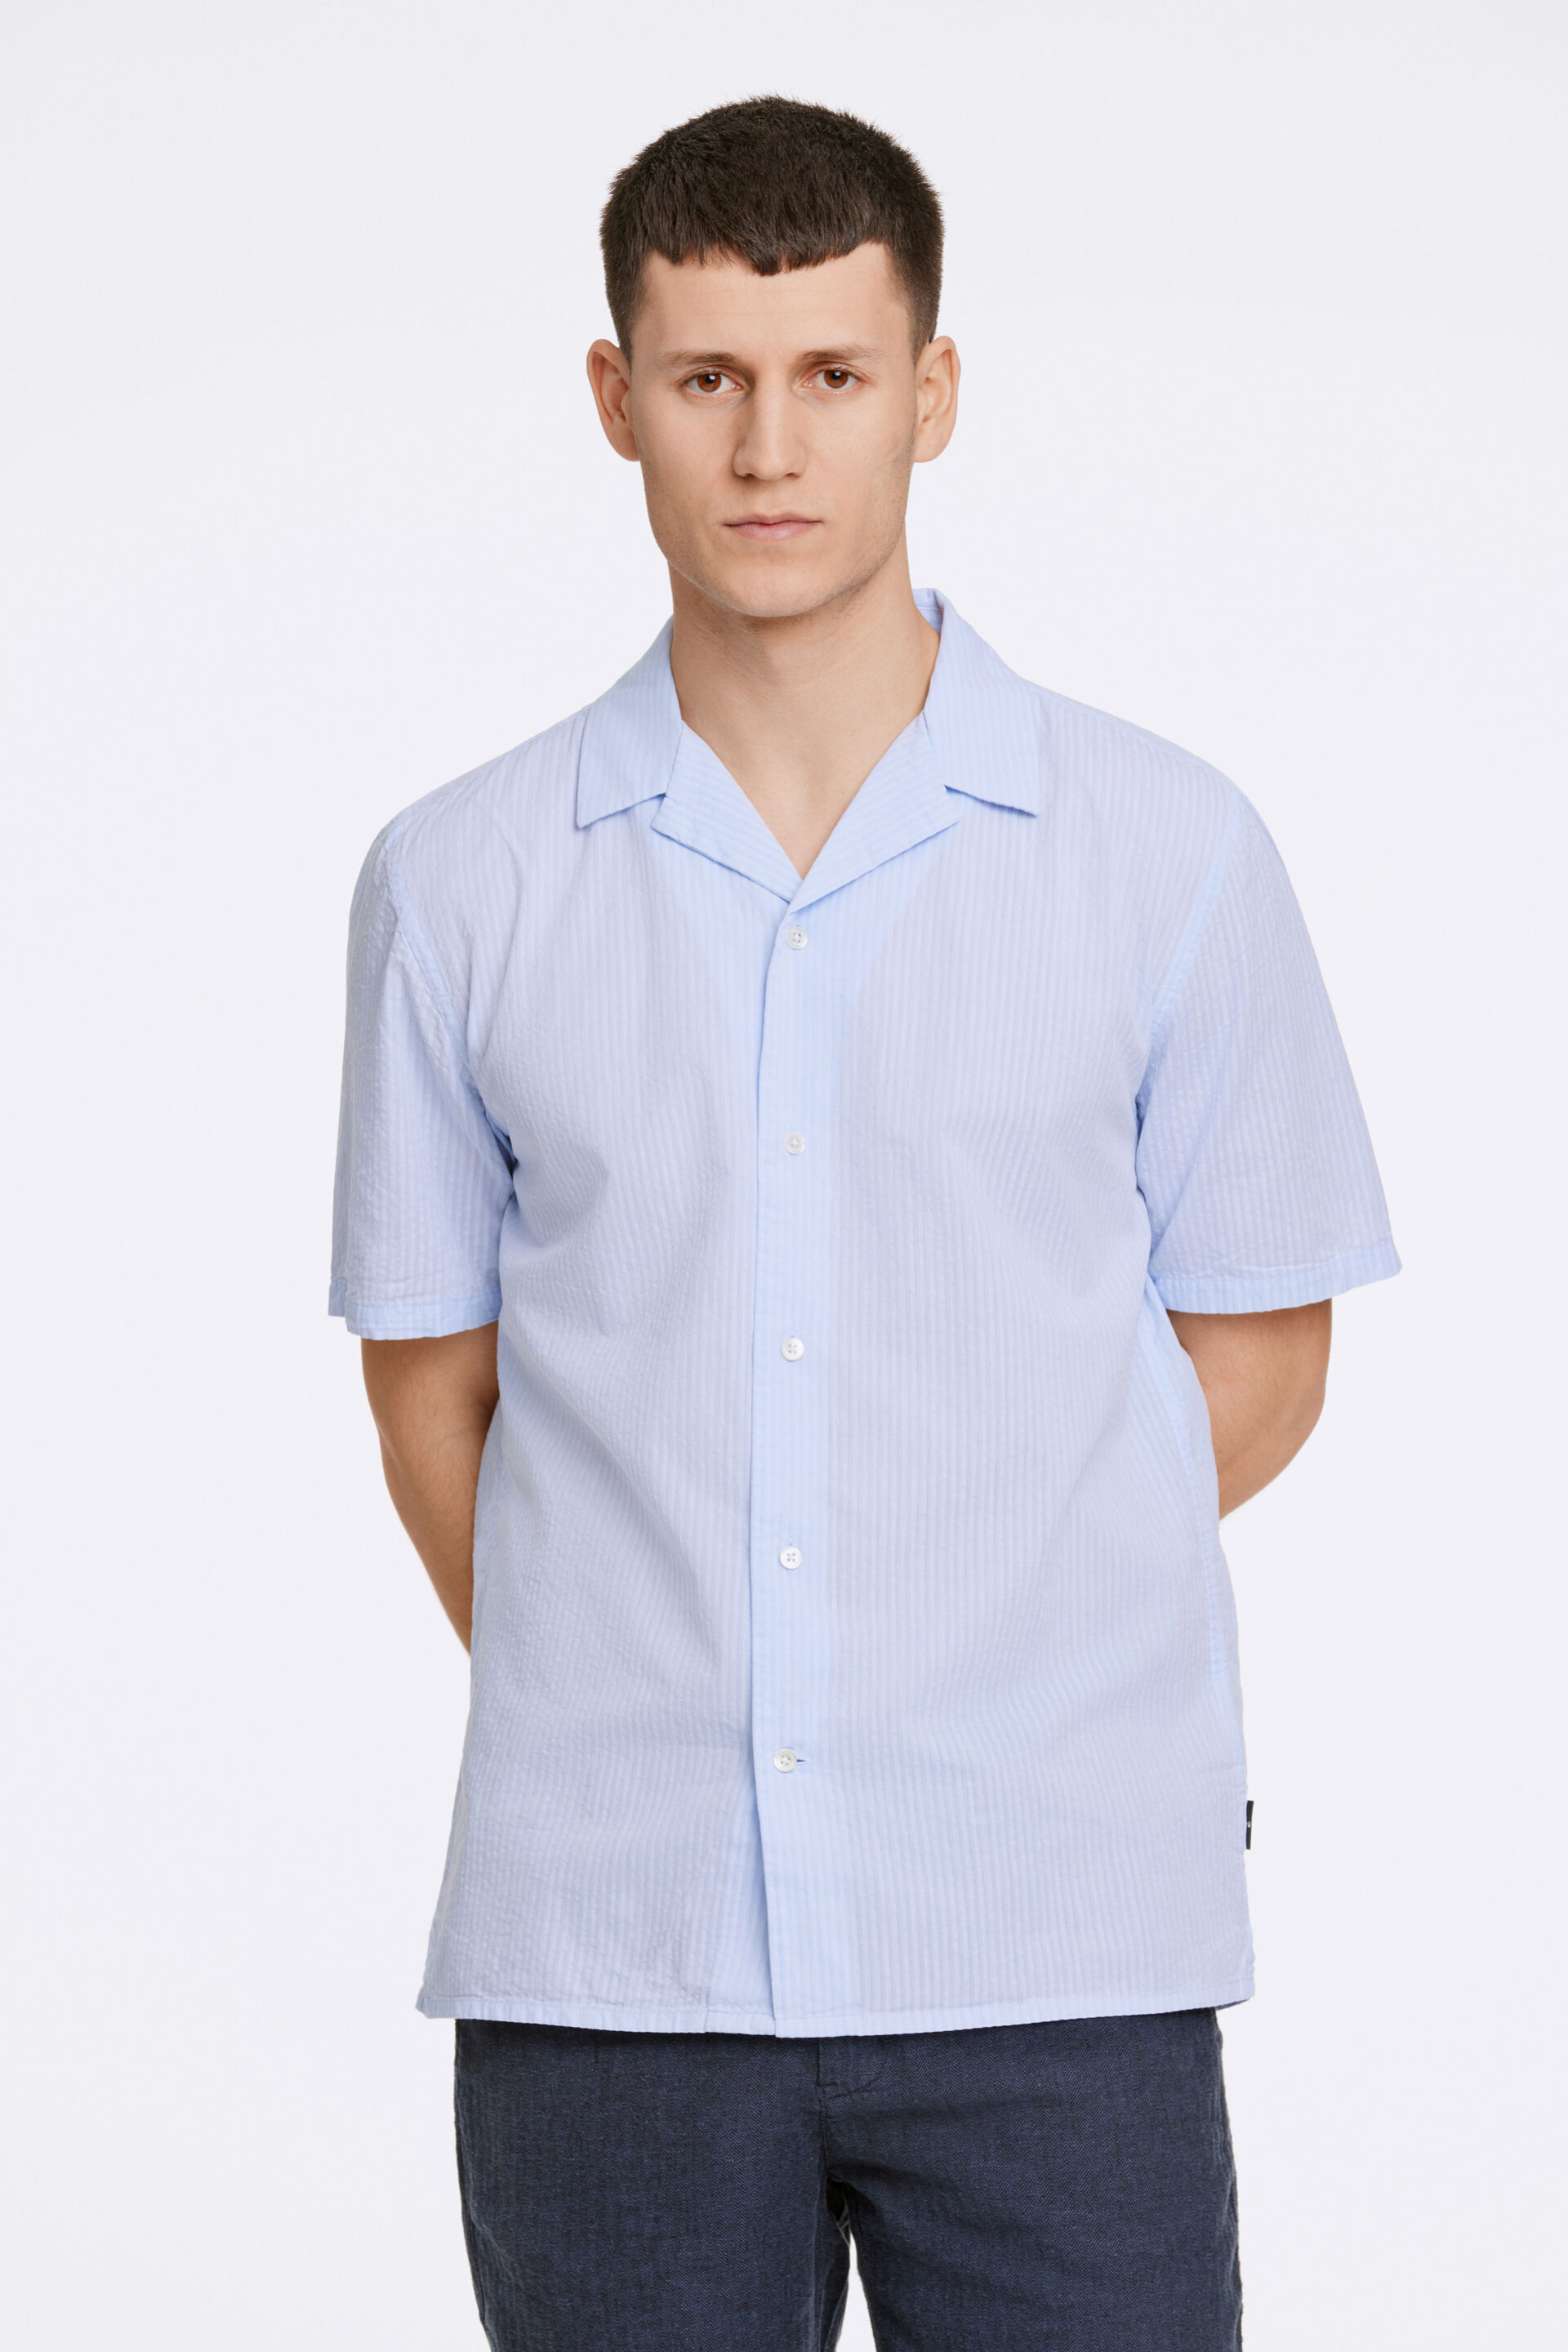 Junk de Luxe  Casual skjorte Blå 60-202083